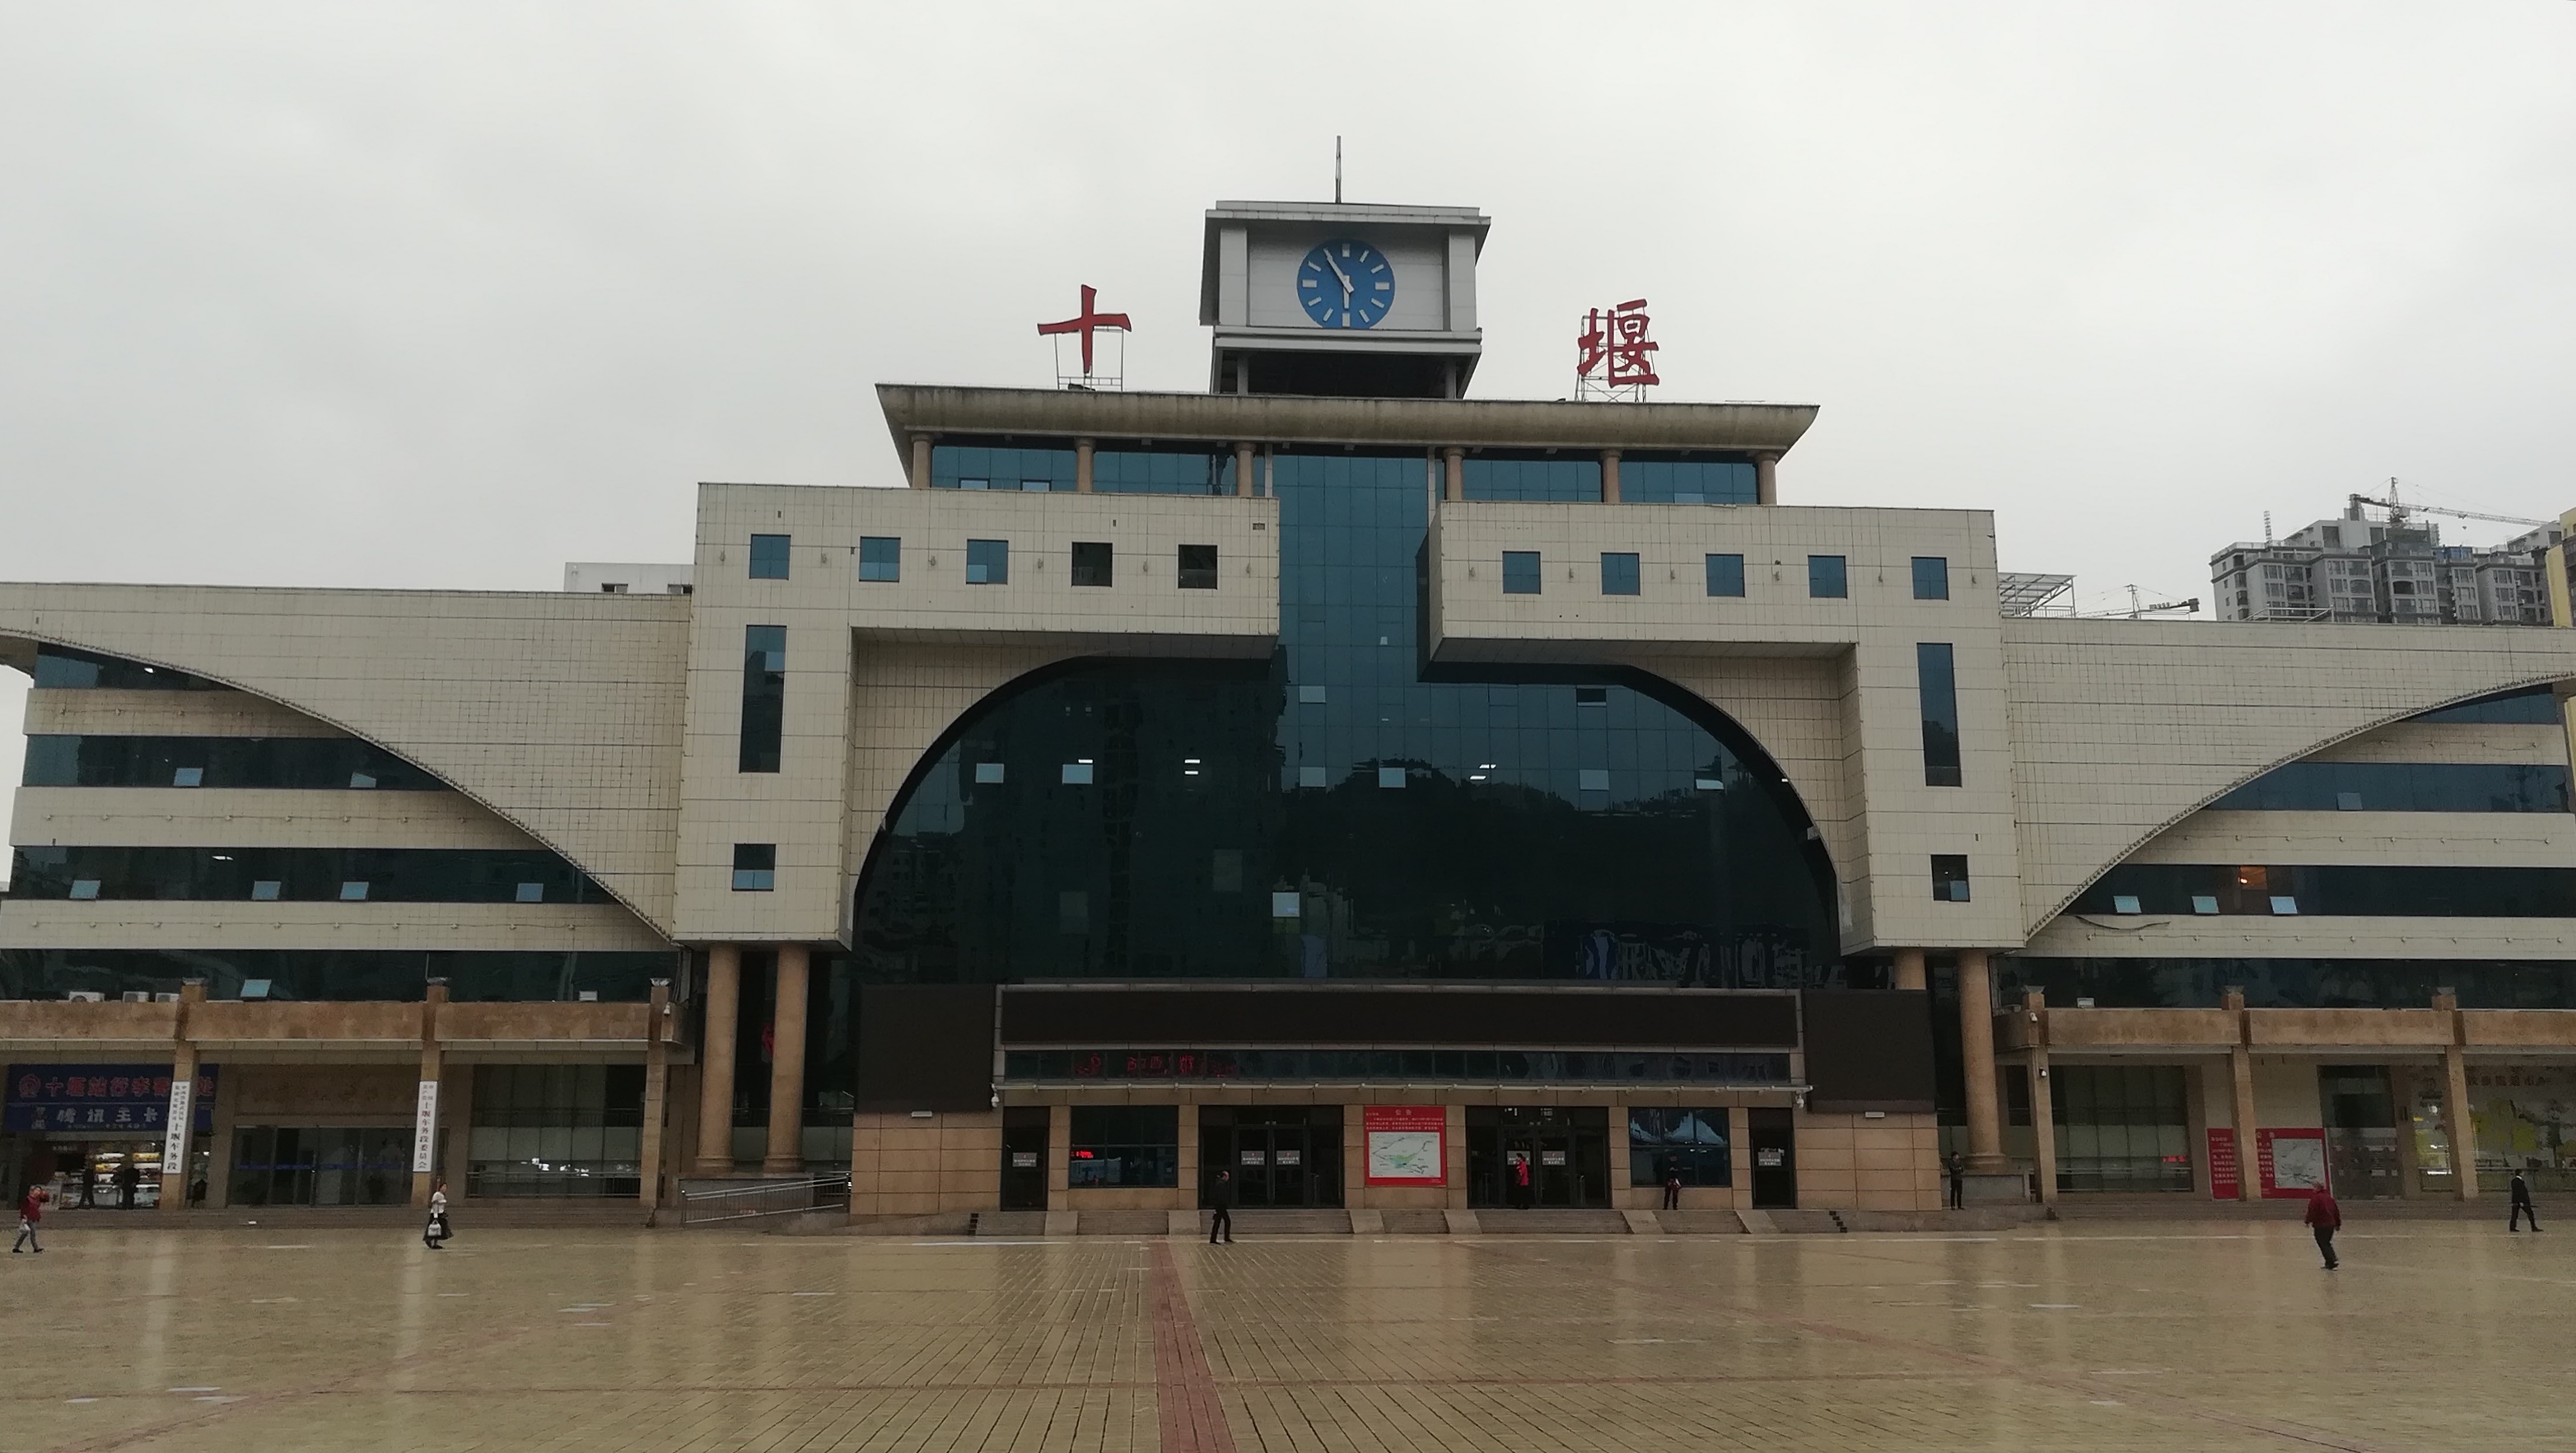 机场乘坐机场公交快线一号线,于17:50左右到达终点站十堰火车站南广场